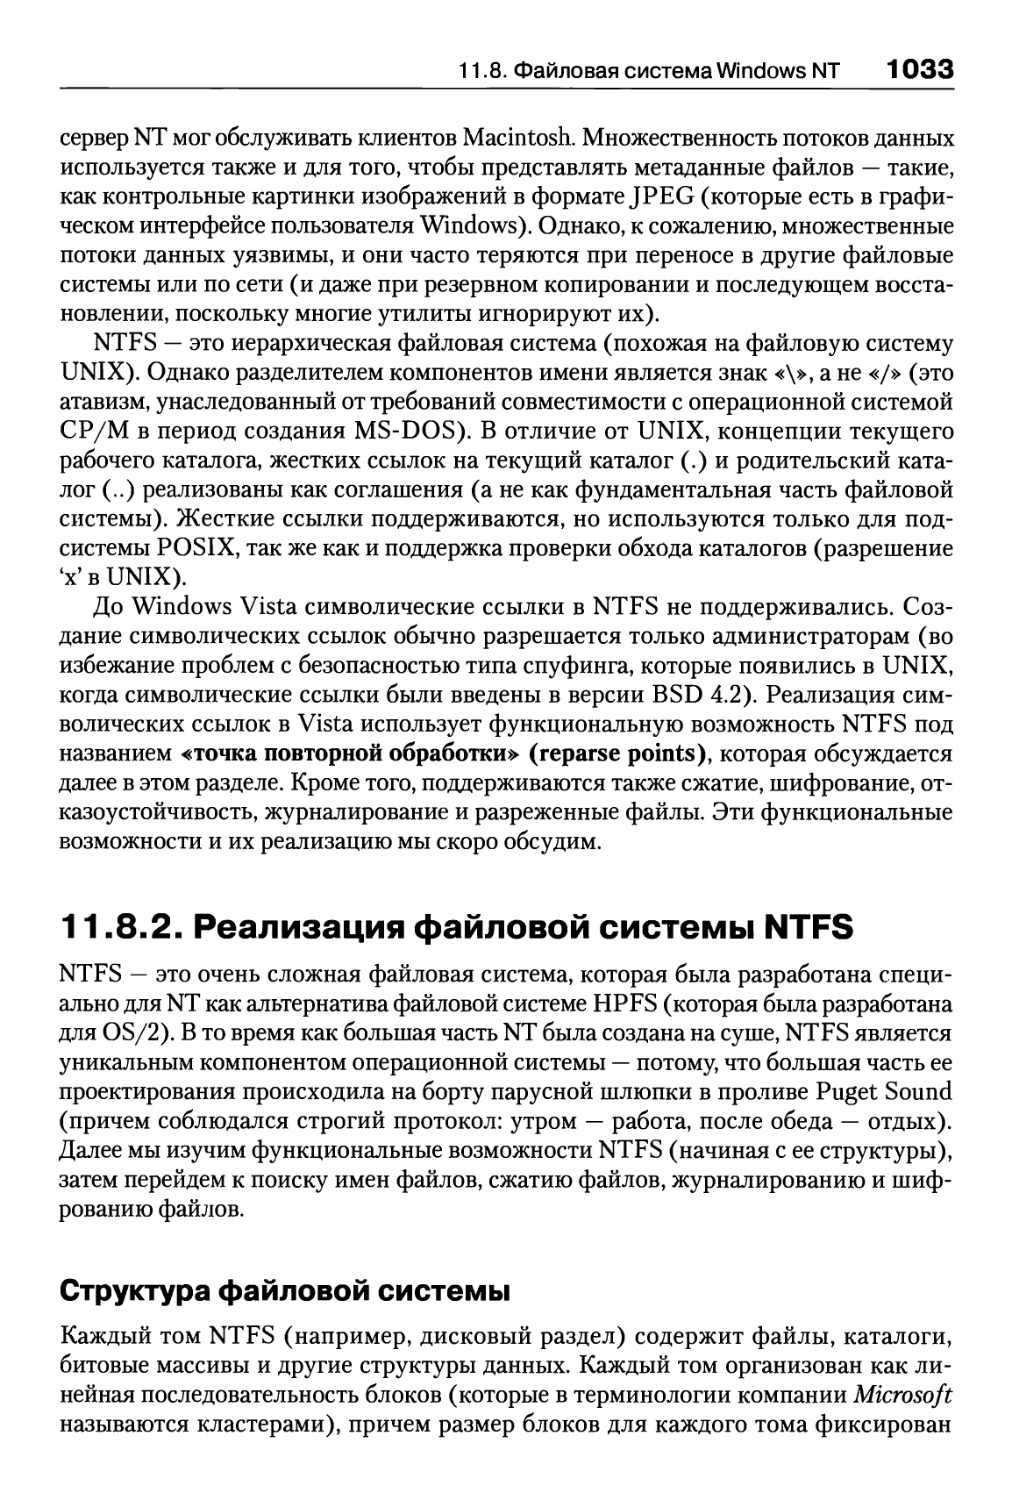 11.8.2. Реализация файловой системы NTFS